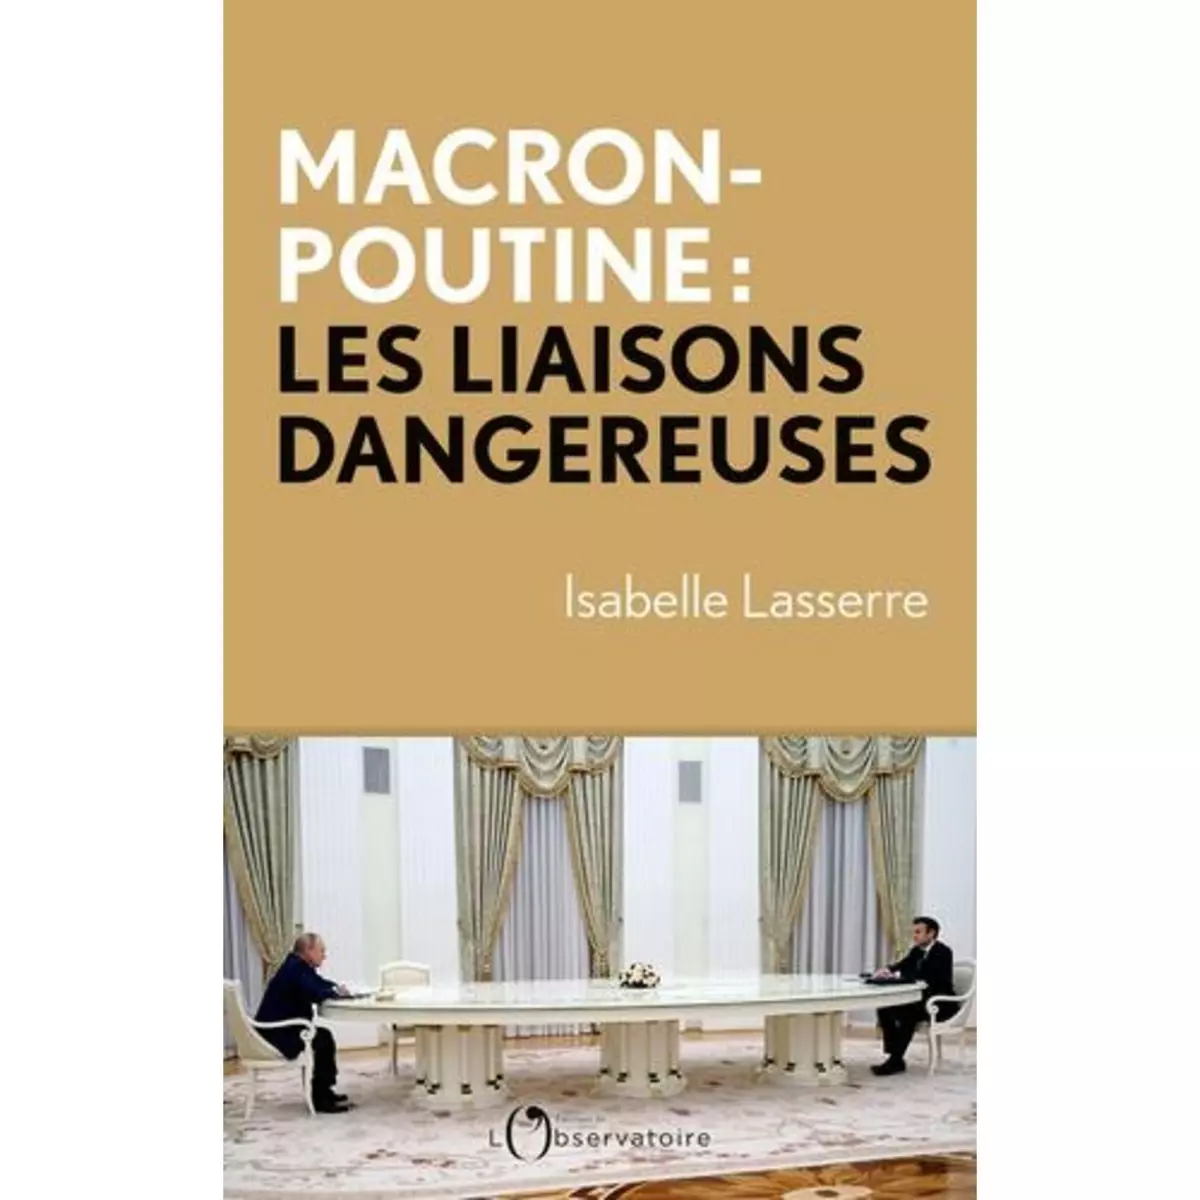  MACRON-POUTINE, LES LIAISONS DANGEREUSES, Lasserre Isabelle